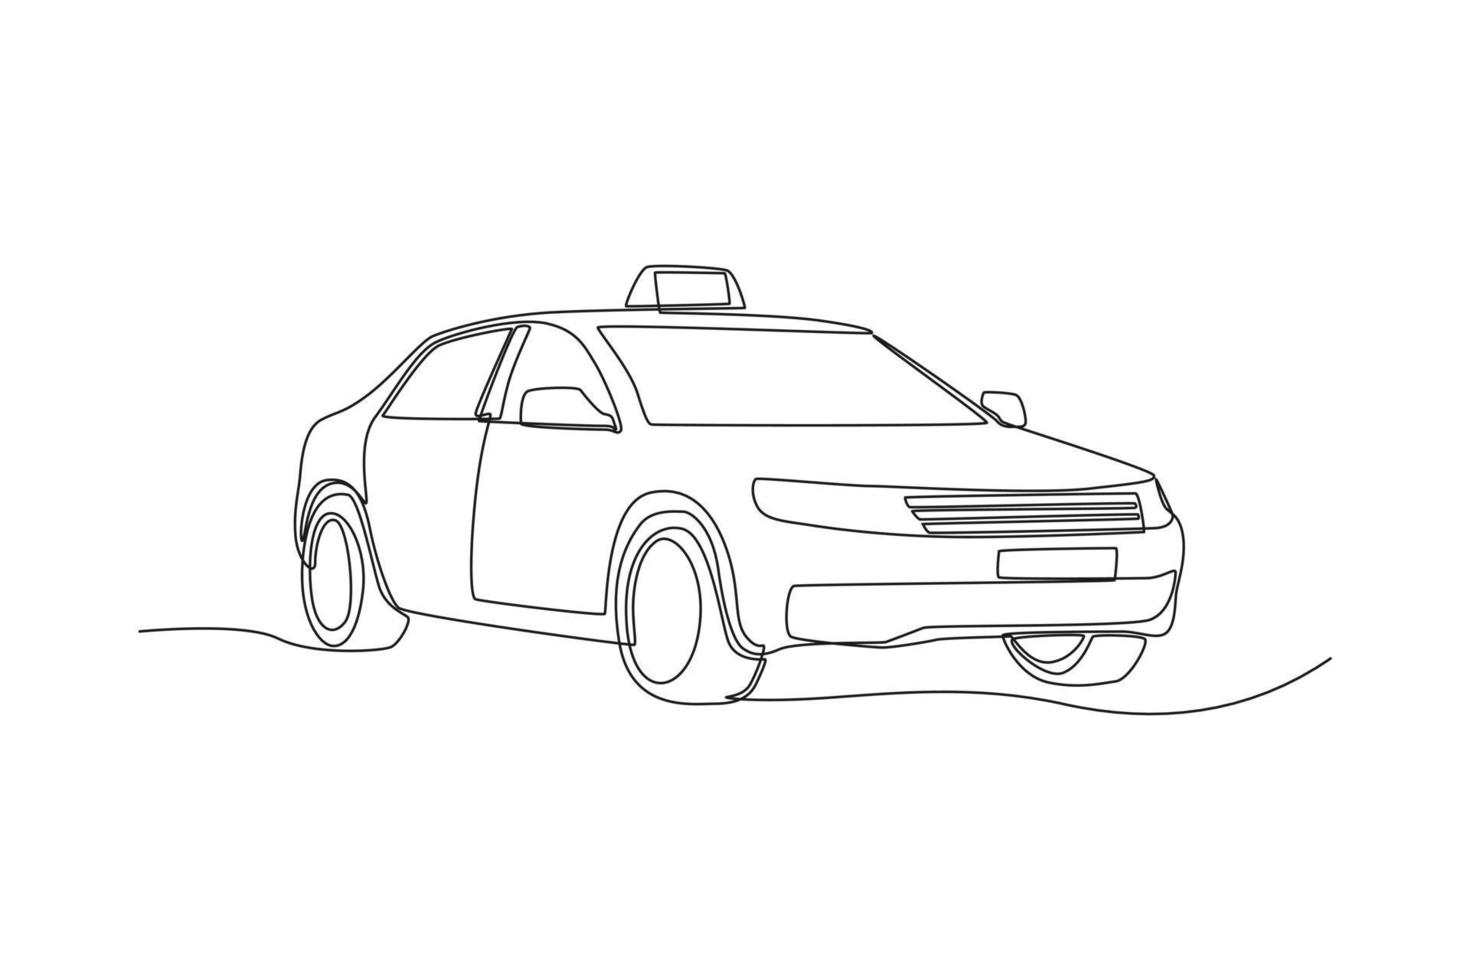 coche de taxi de dibujo de una sola línea. concepto de vehículo. ilustración de vector gráfico de diseño de dibujo de línea continua.